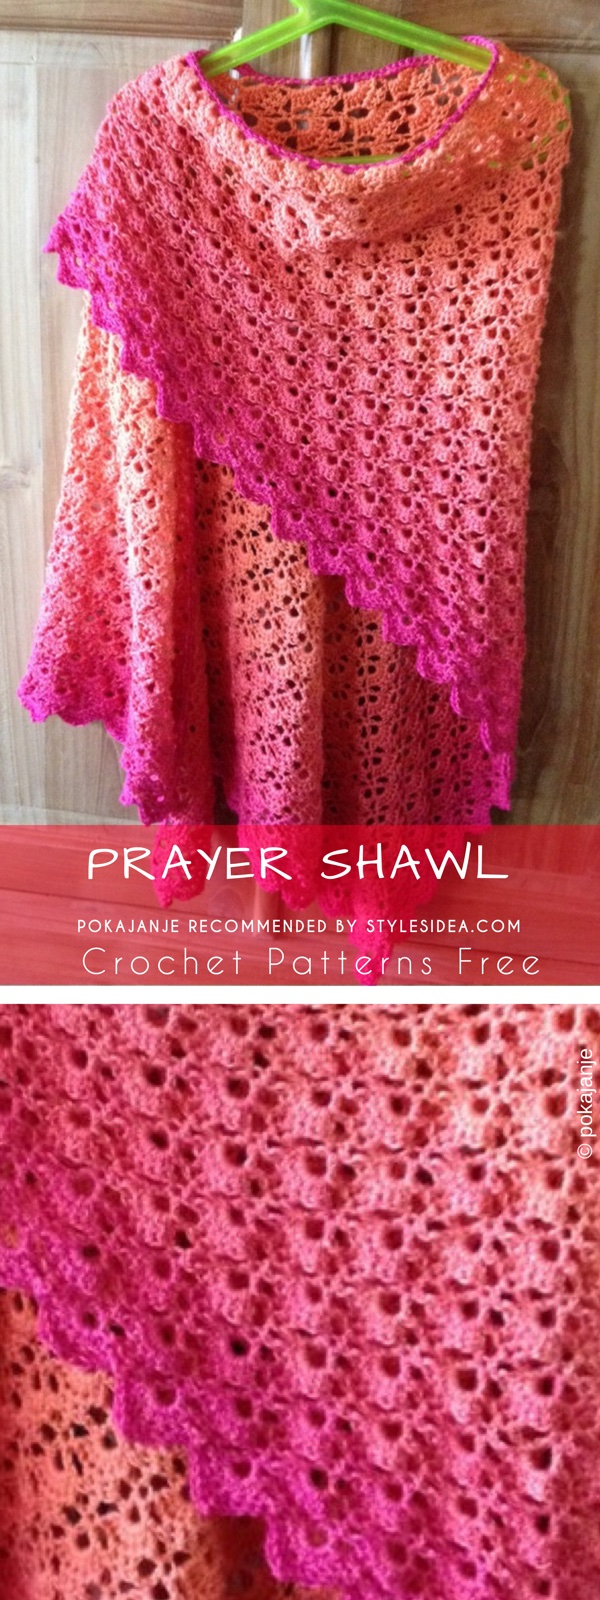 Free Shawl Crochet Patterns Prayer Shawl Crochet Pattern Free Styles Idea